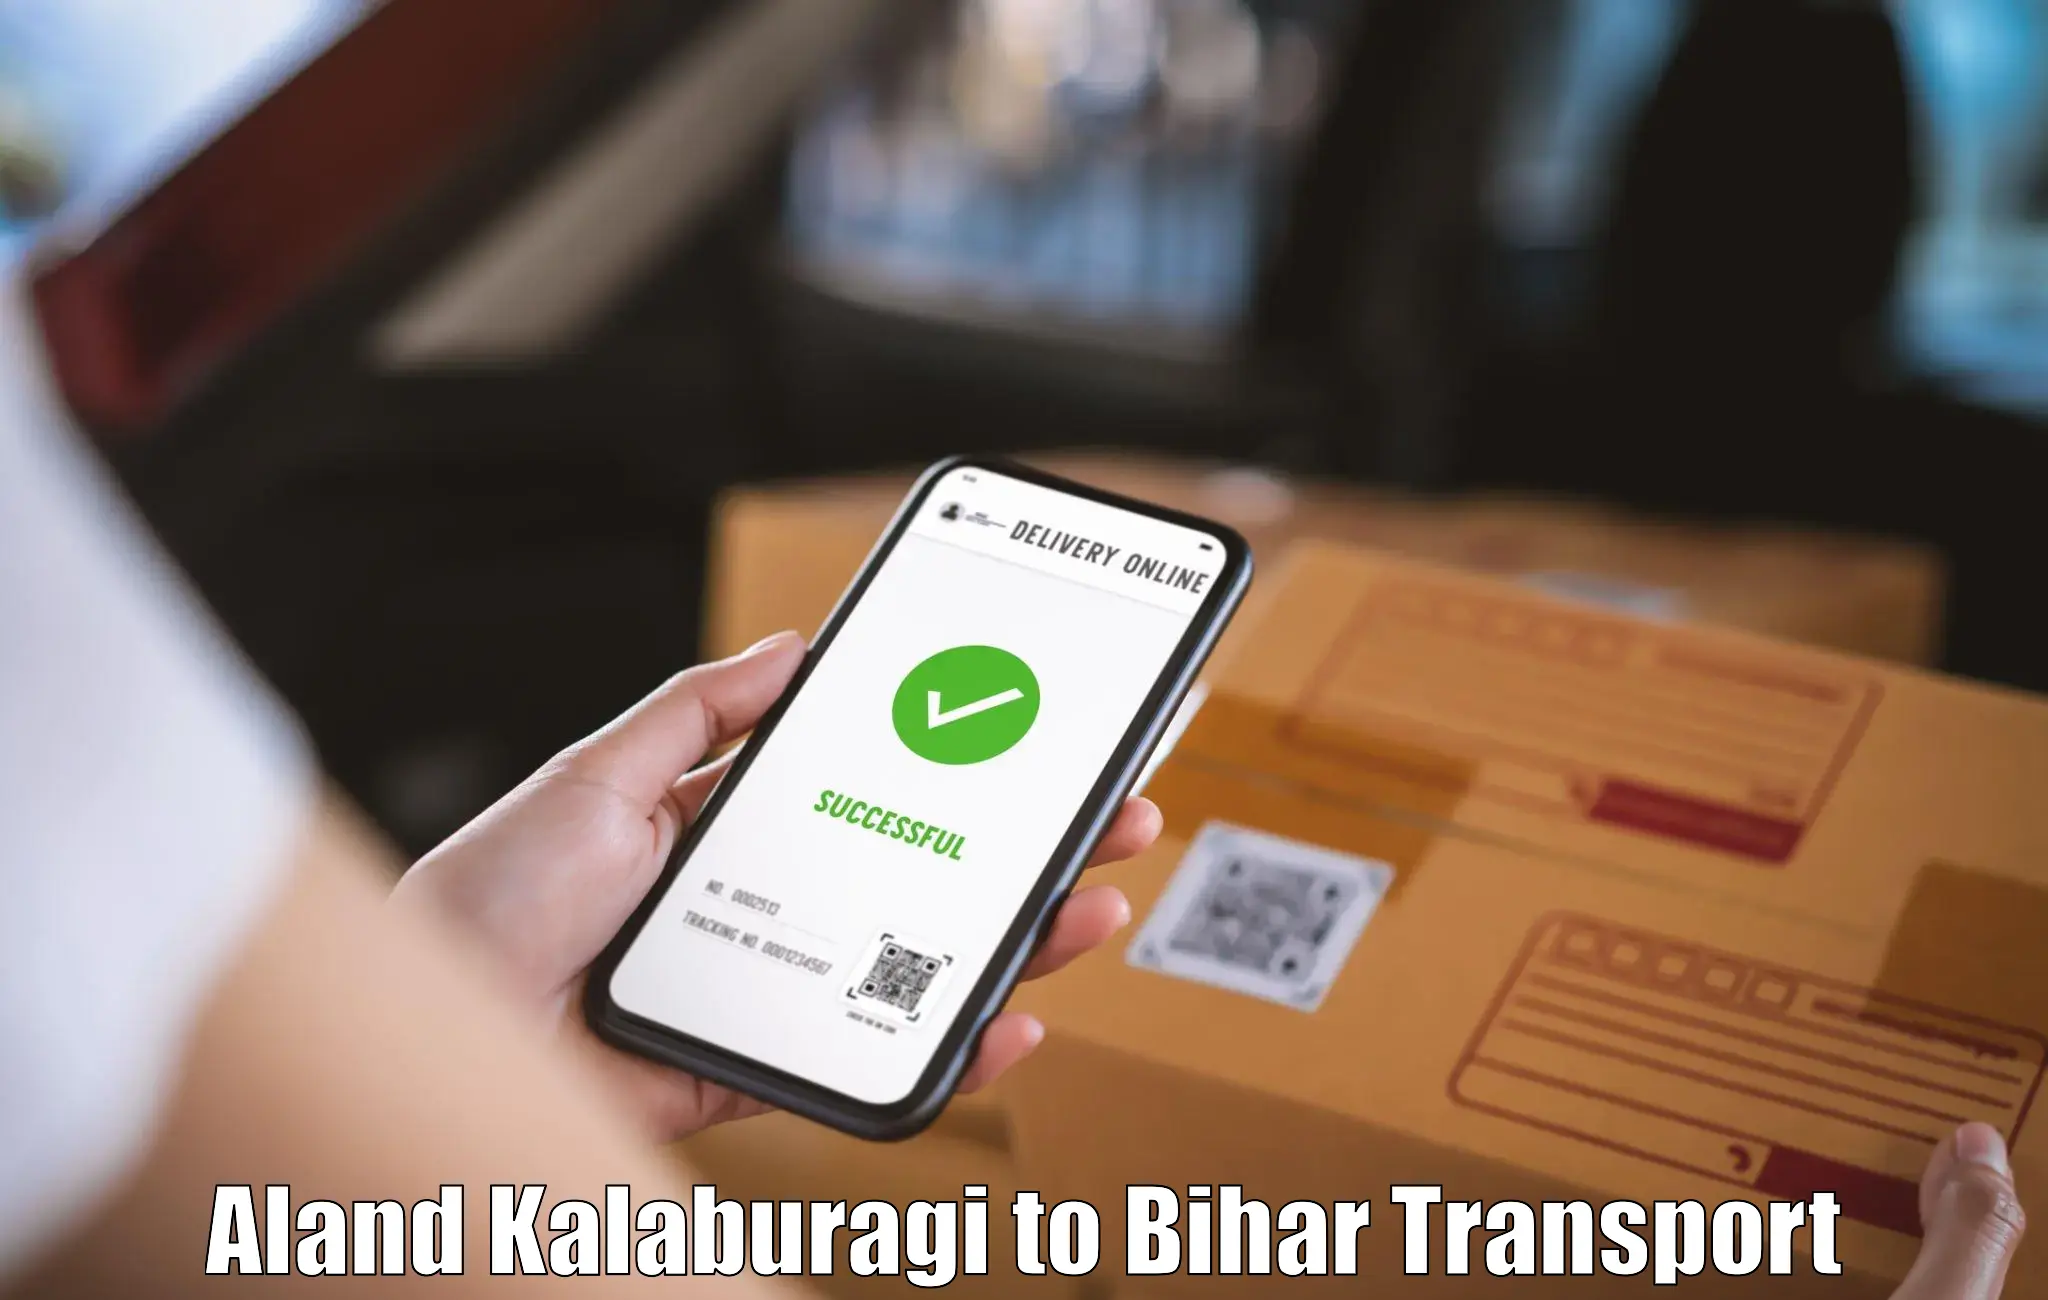 Container transport service Aland Kalaburagi to Aurangabad Bihar